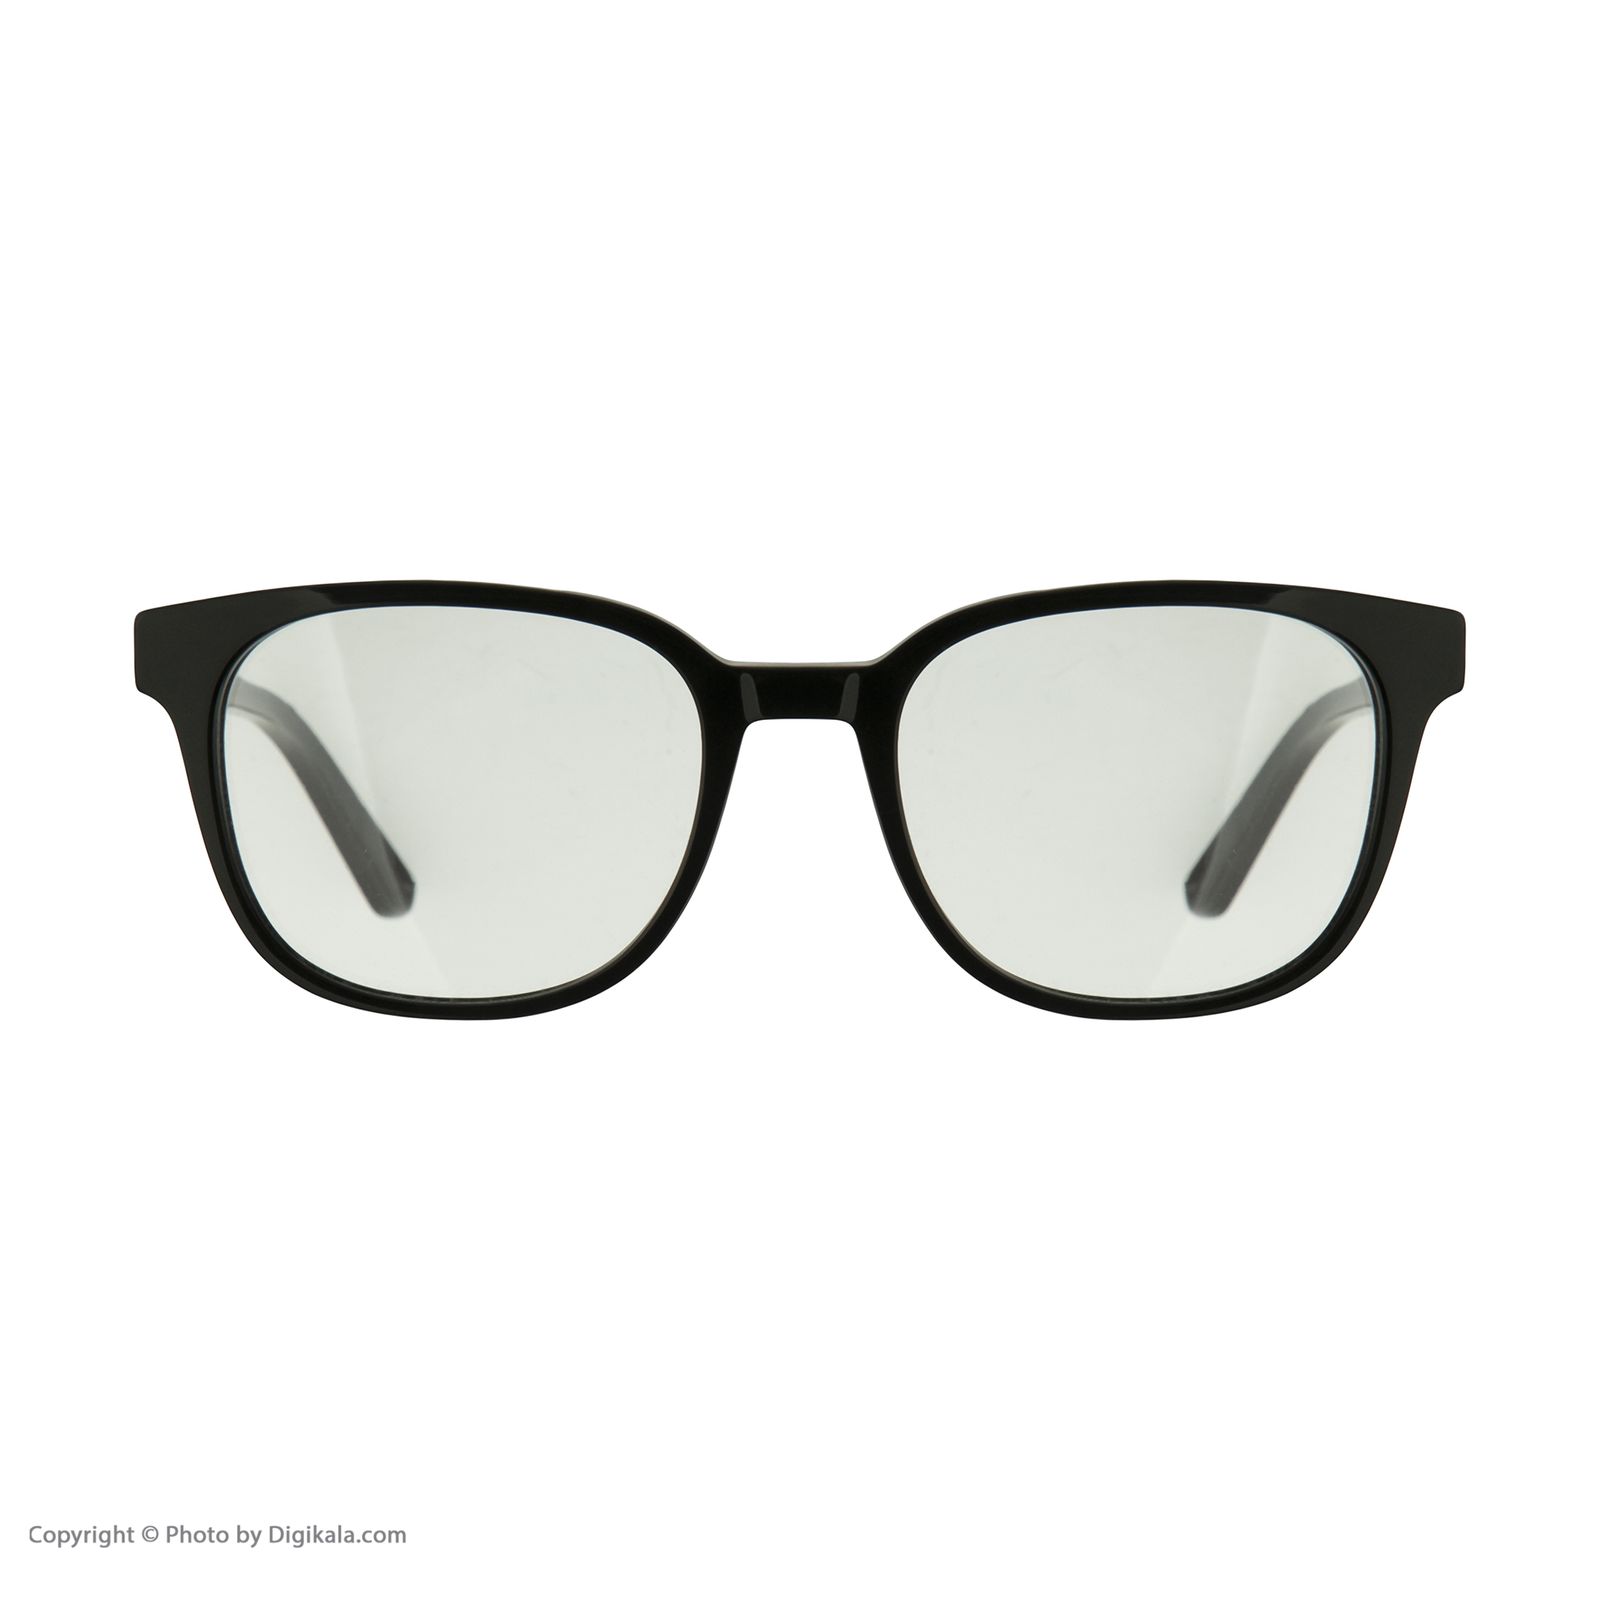 فریم عینک طبی کارل لاگرفلد مدل KL974V1 -  - 2